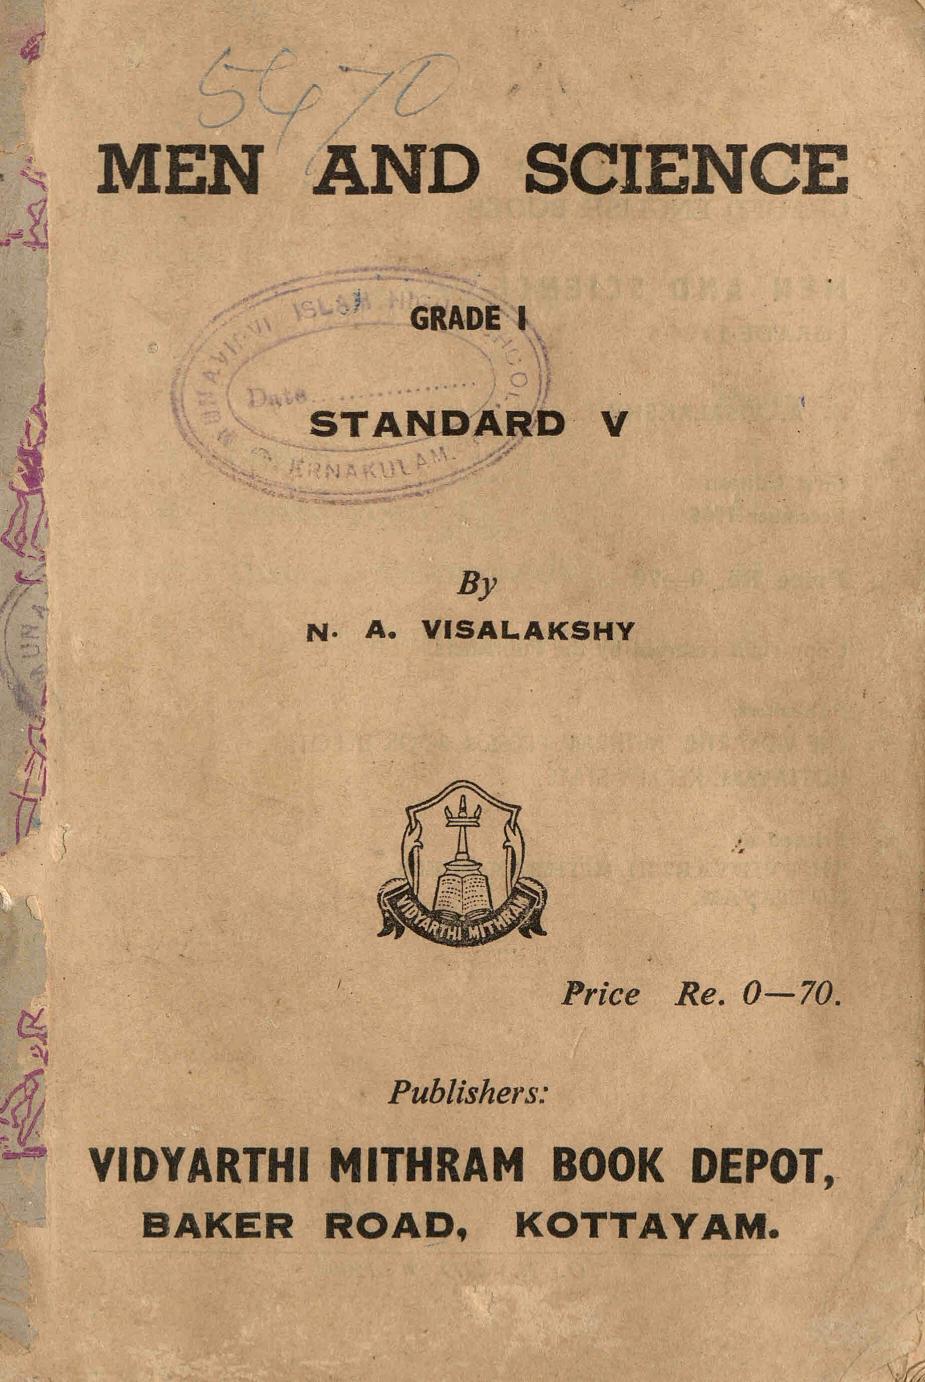 1965 -Men and Science Grade - I Standard - V - N. A. Visalakshy